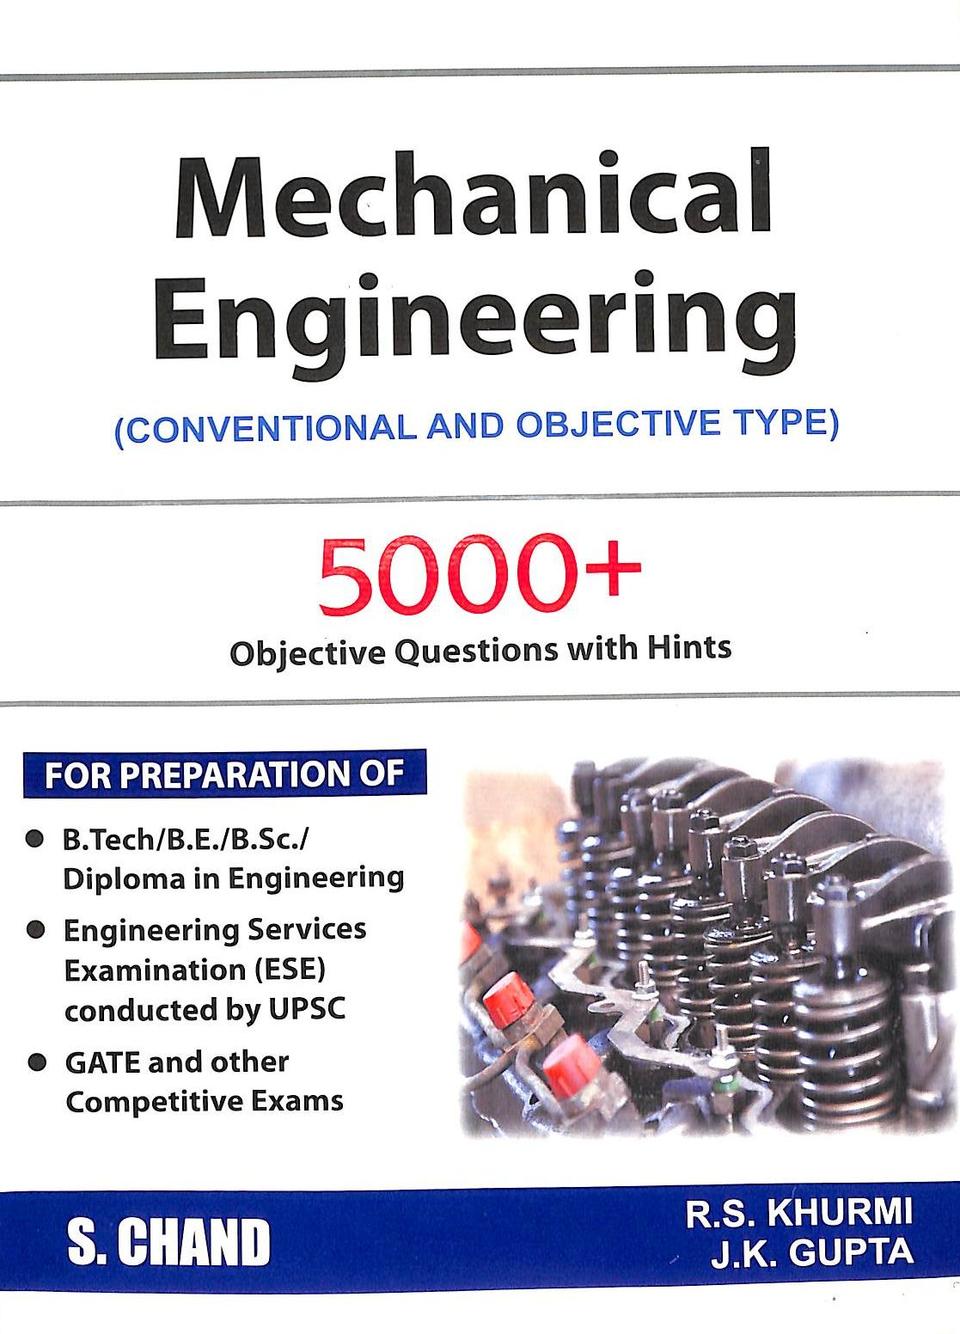 engineering mechanics by koteeswaran pdf